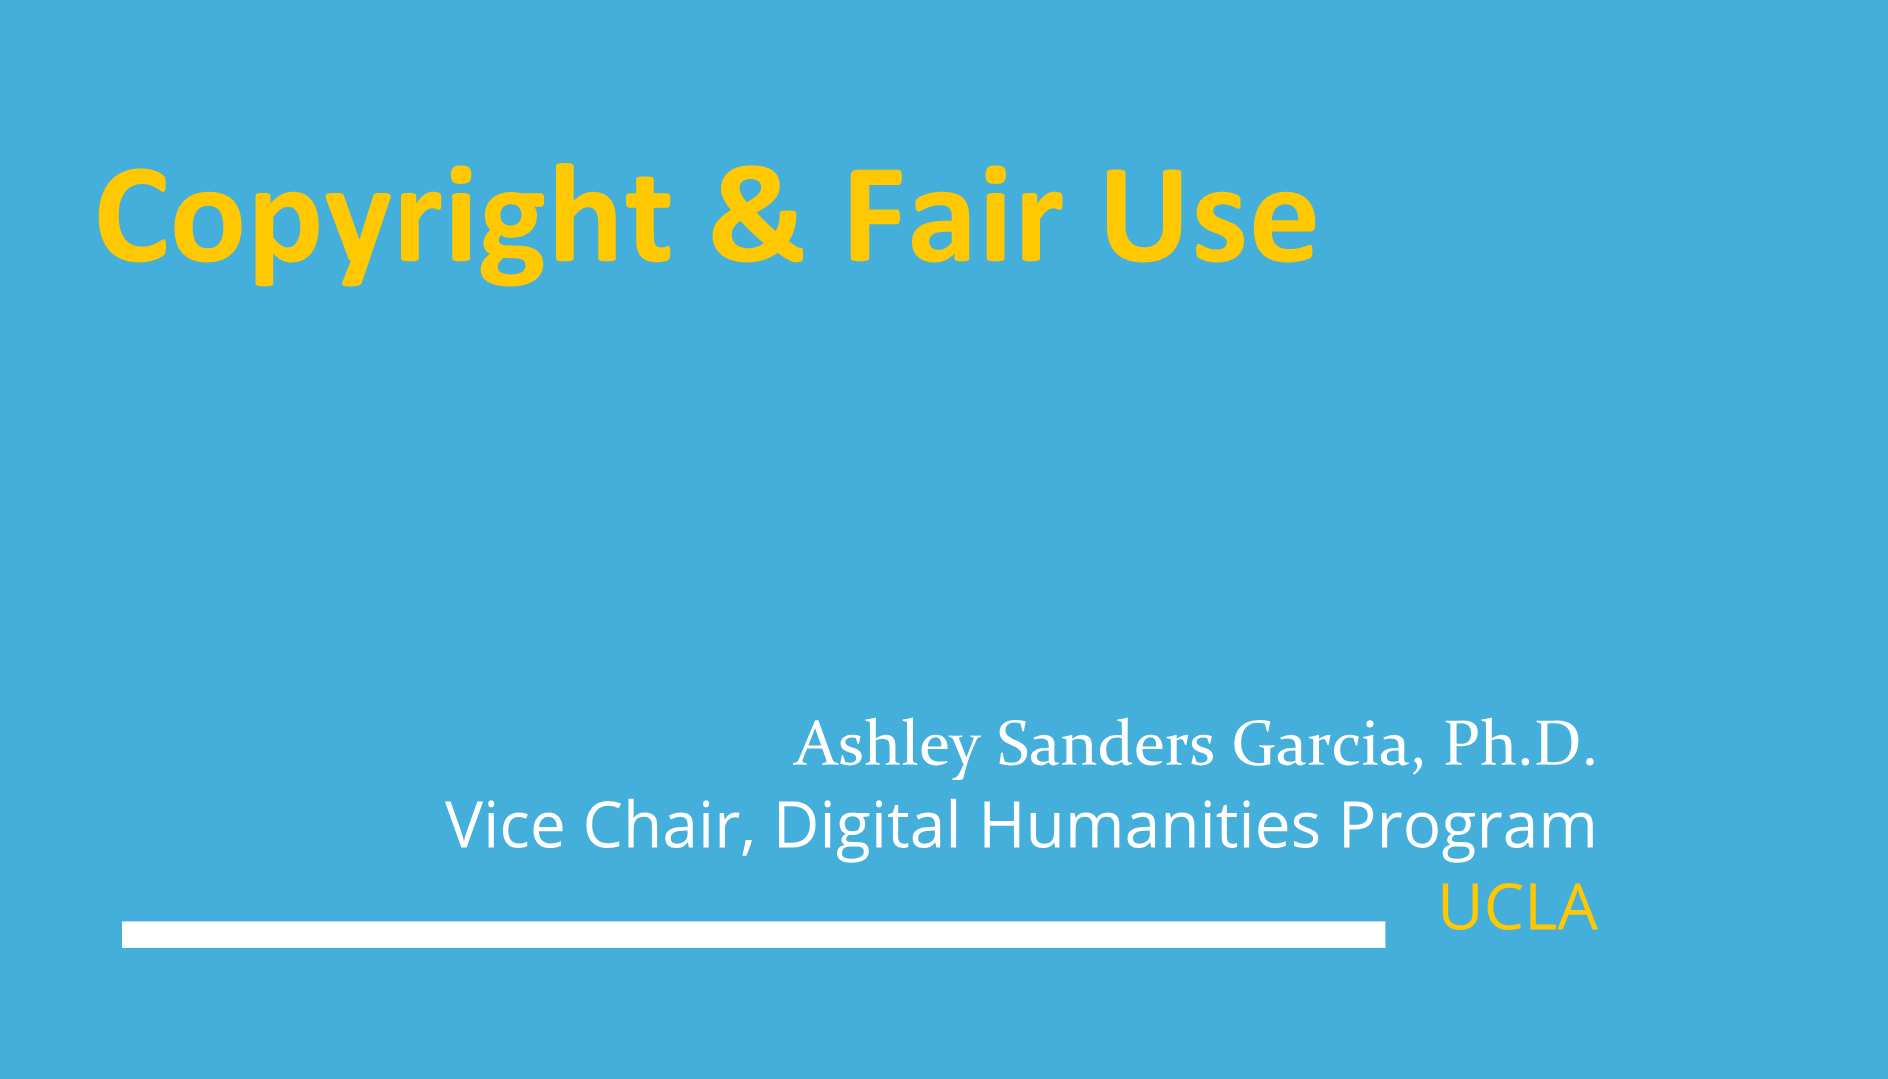 Copyright & Fair Use: A Primer